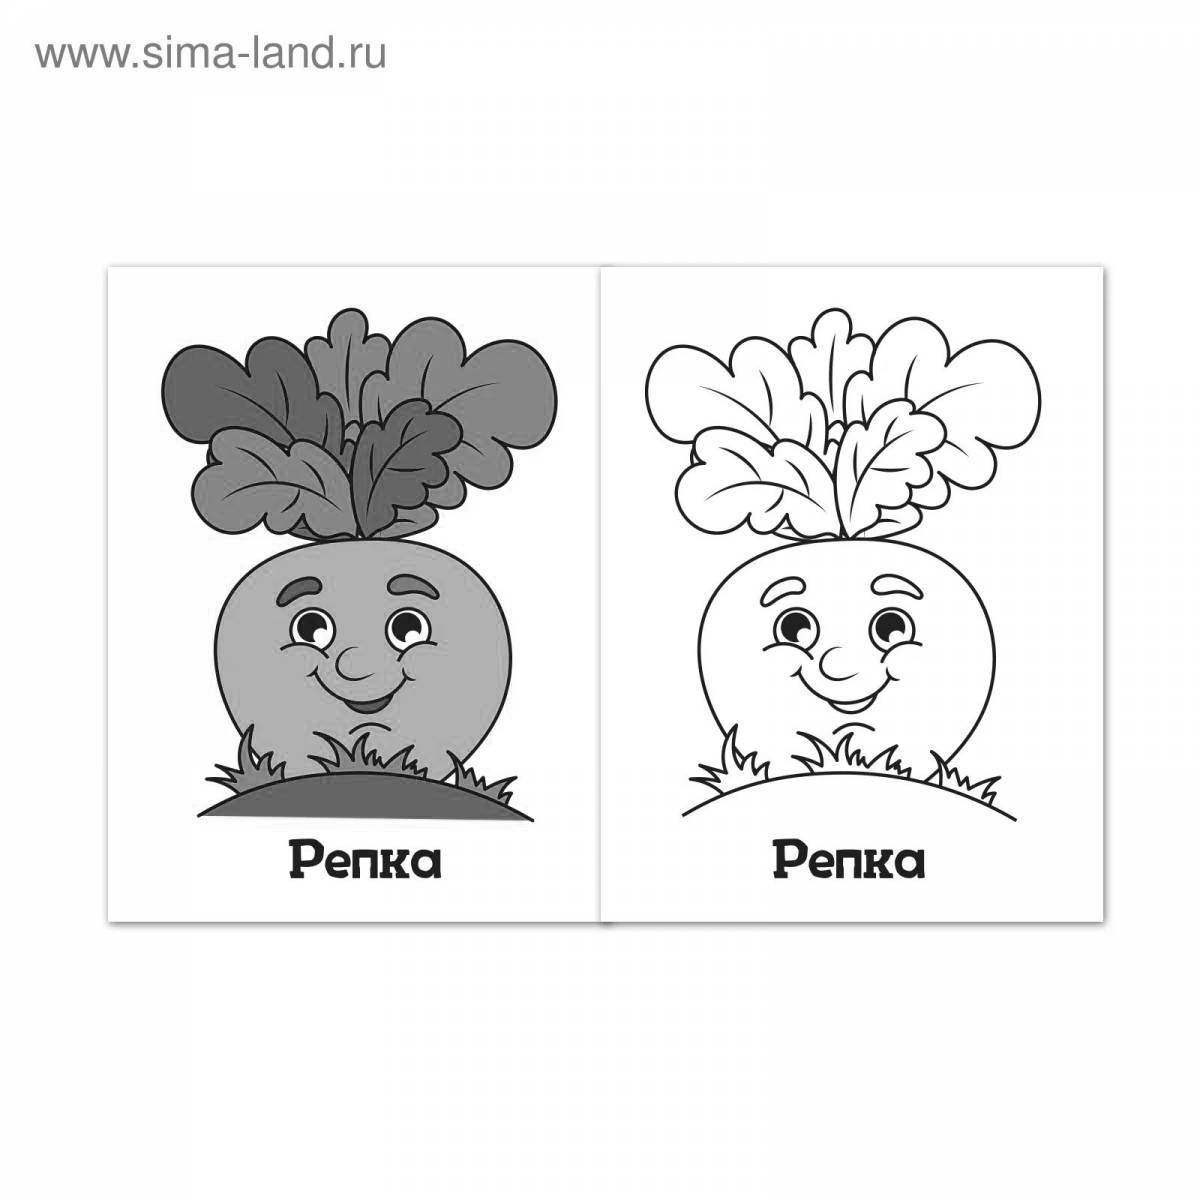 Fun coloring for kids turnips